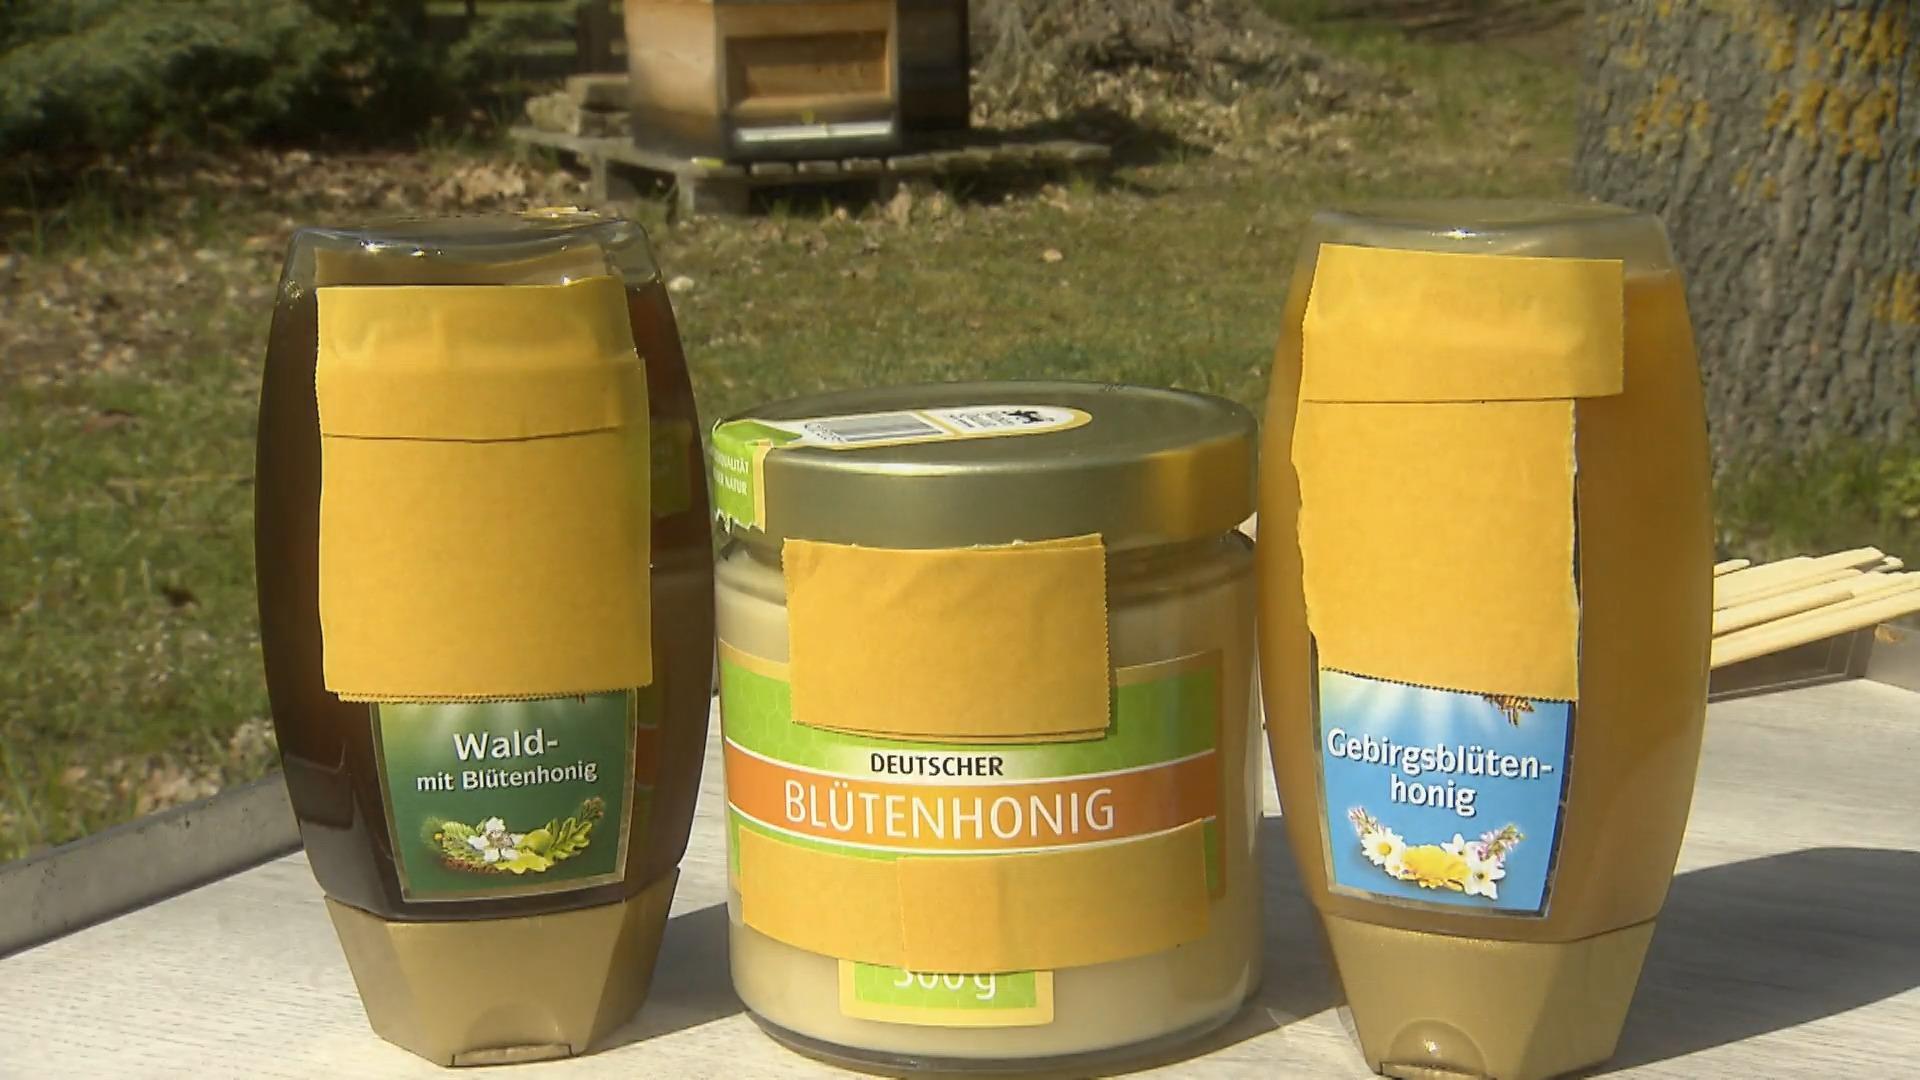 Gepanschter Honig Worauf Verbraucher achten sollten